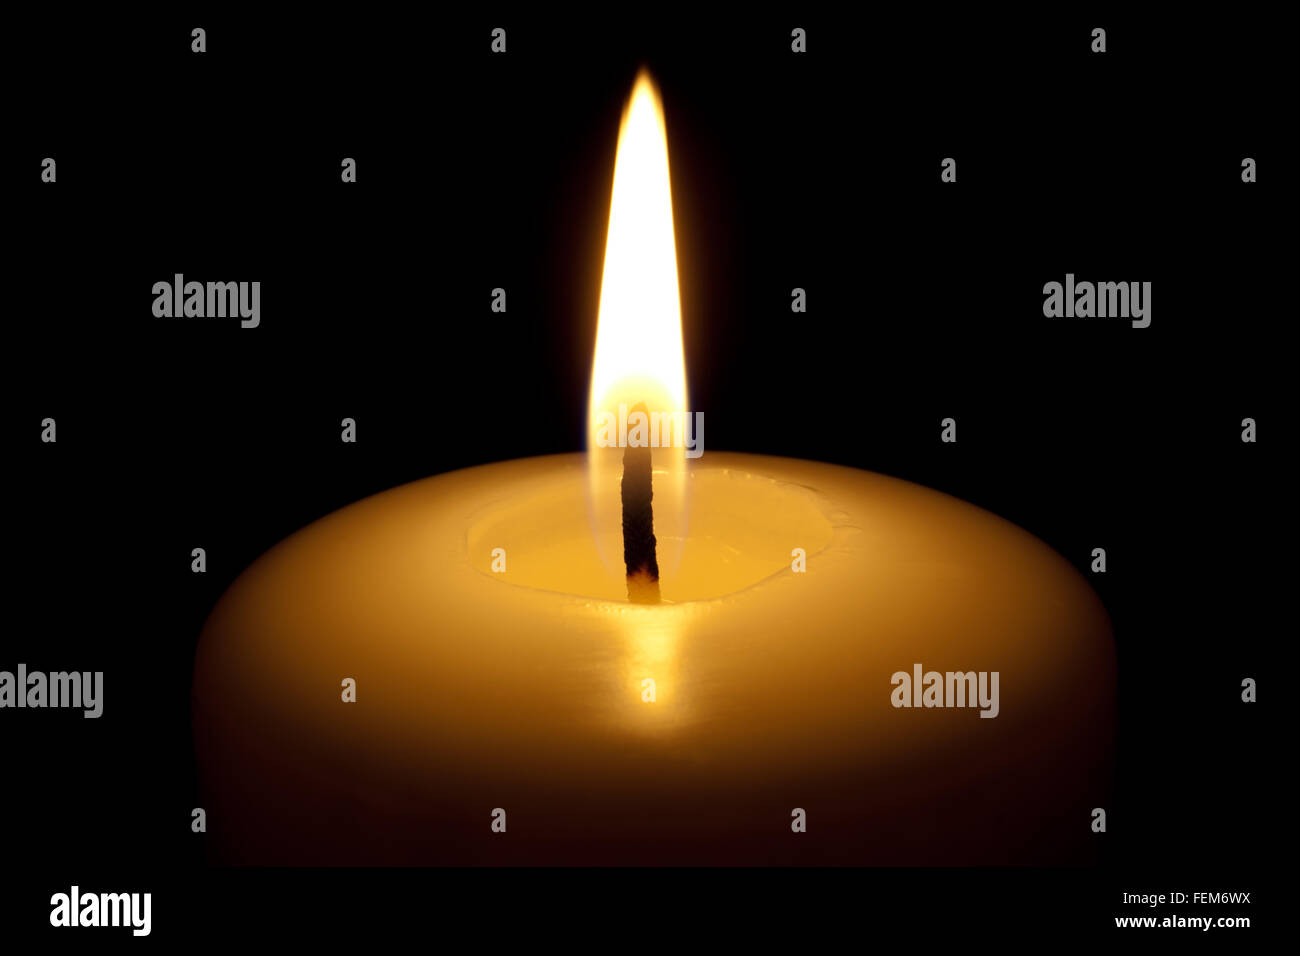 Burning candle, isolated on the black background. Stock Photo